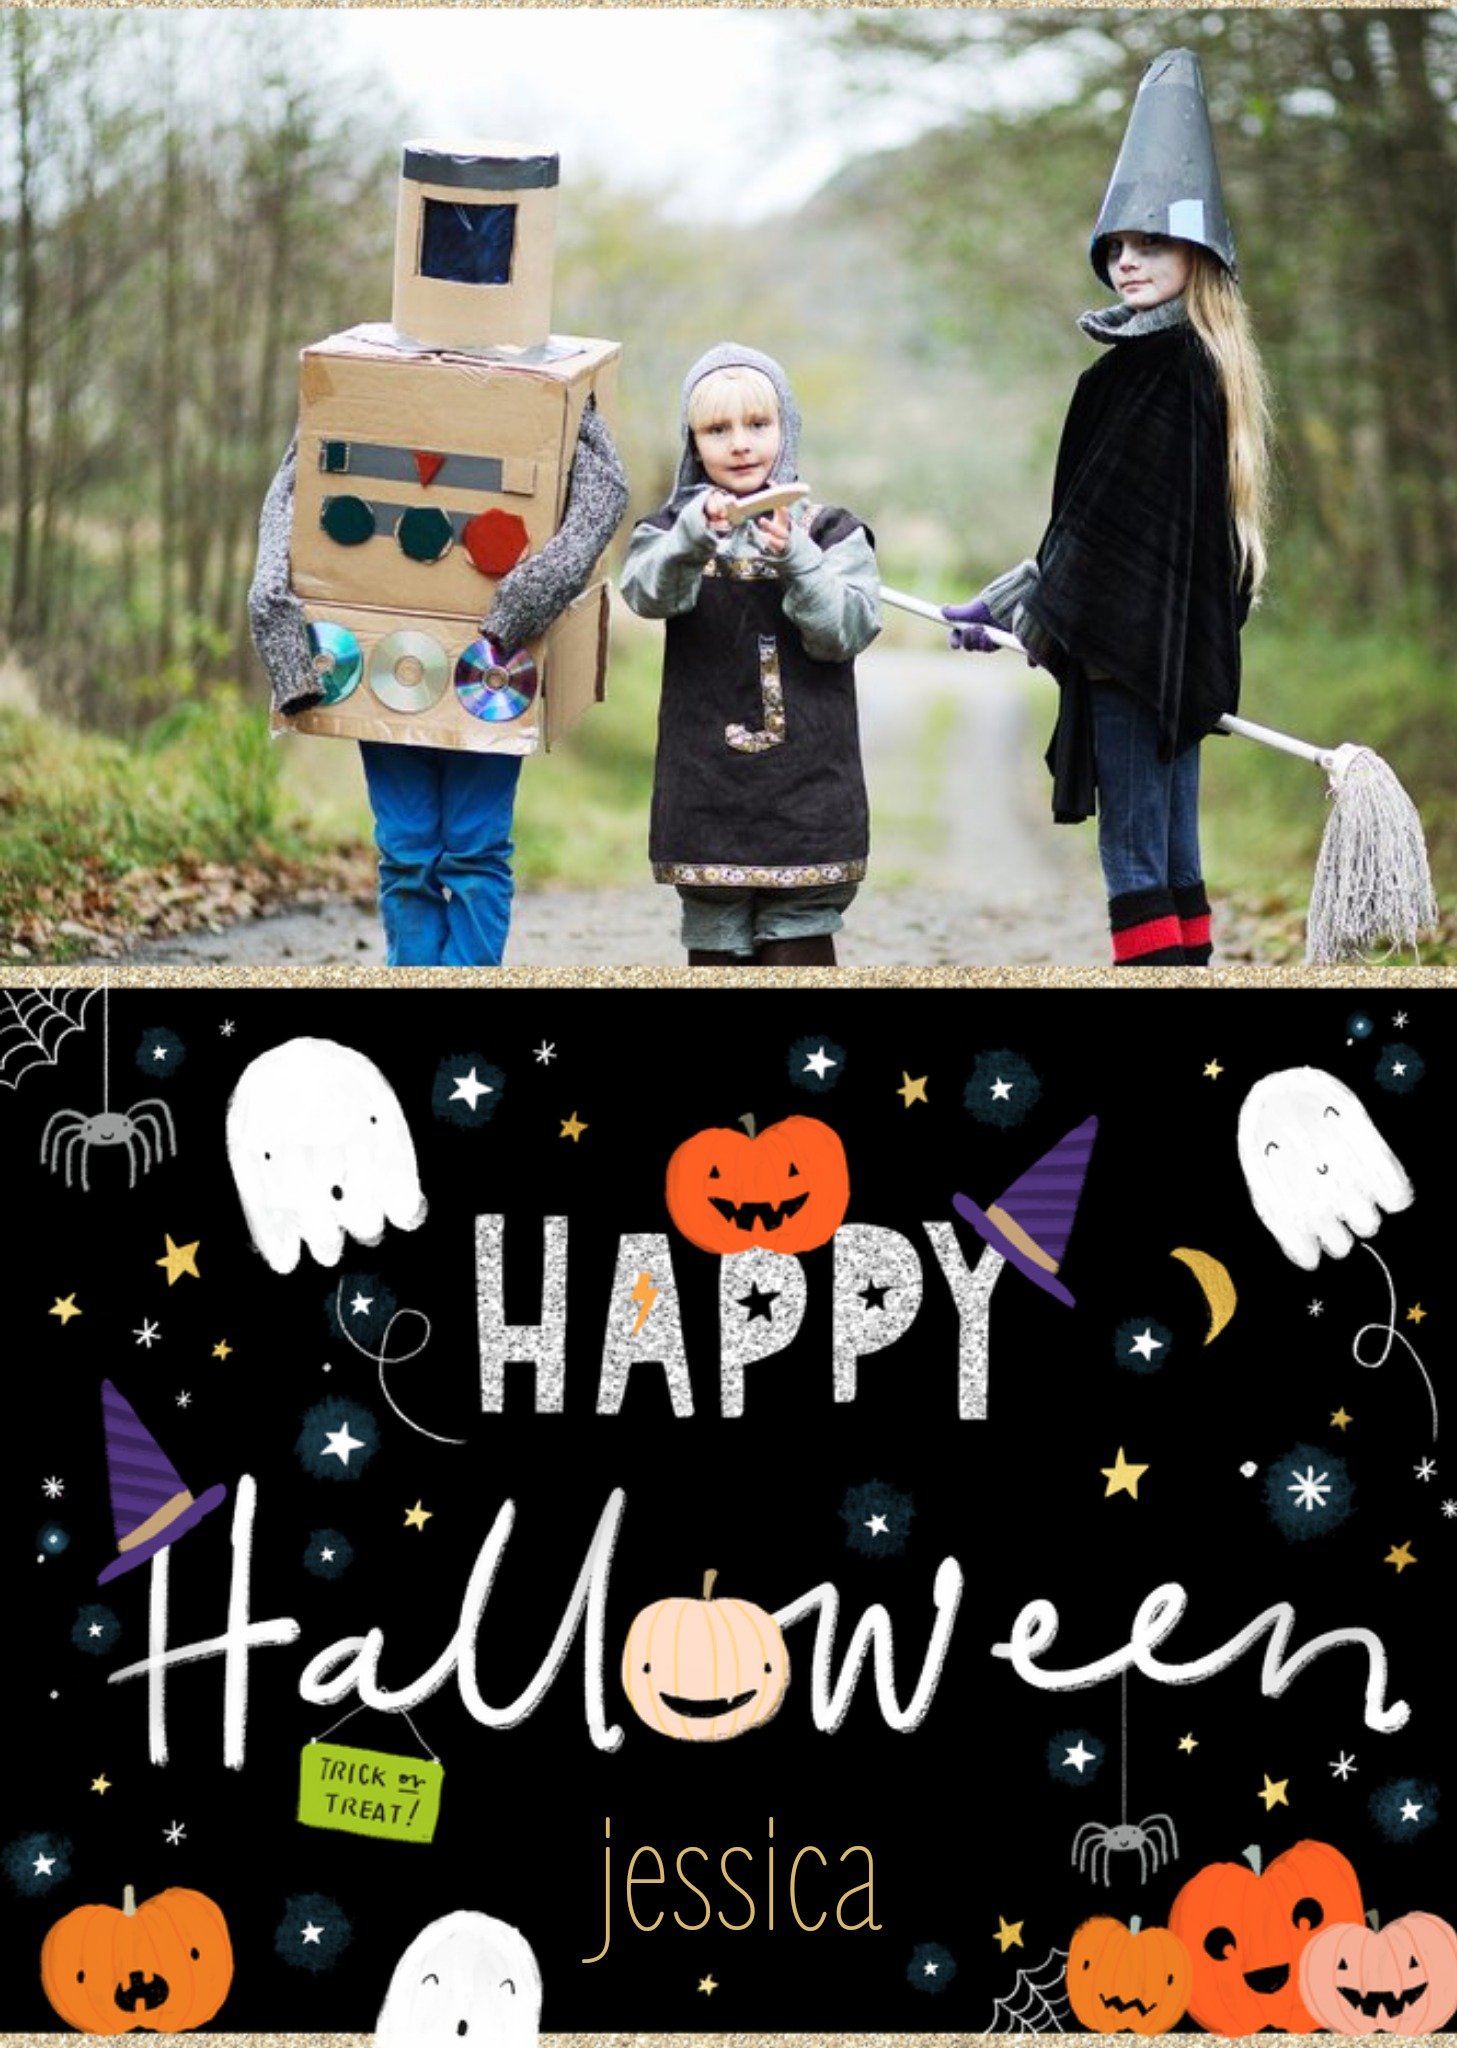 Moonpig Cute Illustrated Halloween Icons Photo Upload Happy Halloween Card Ecard